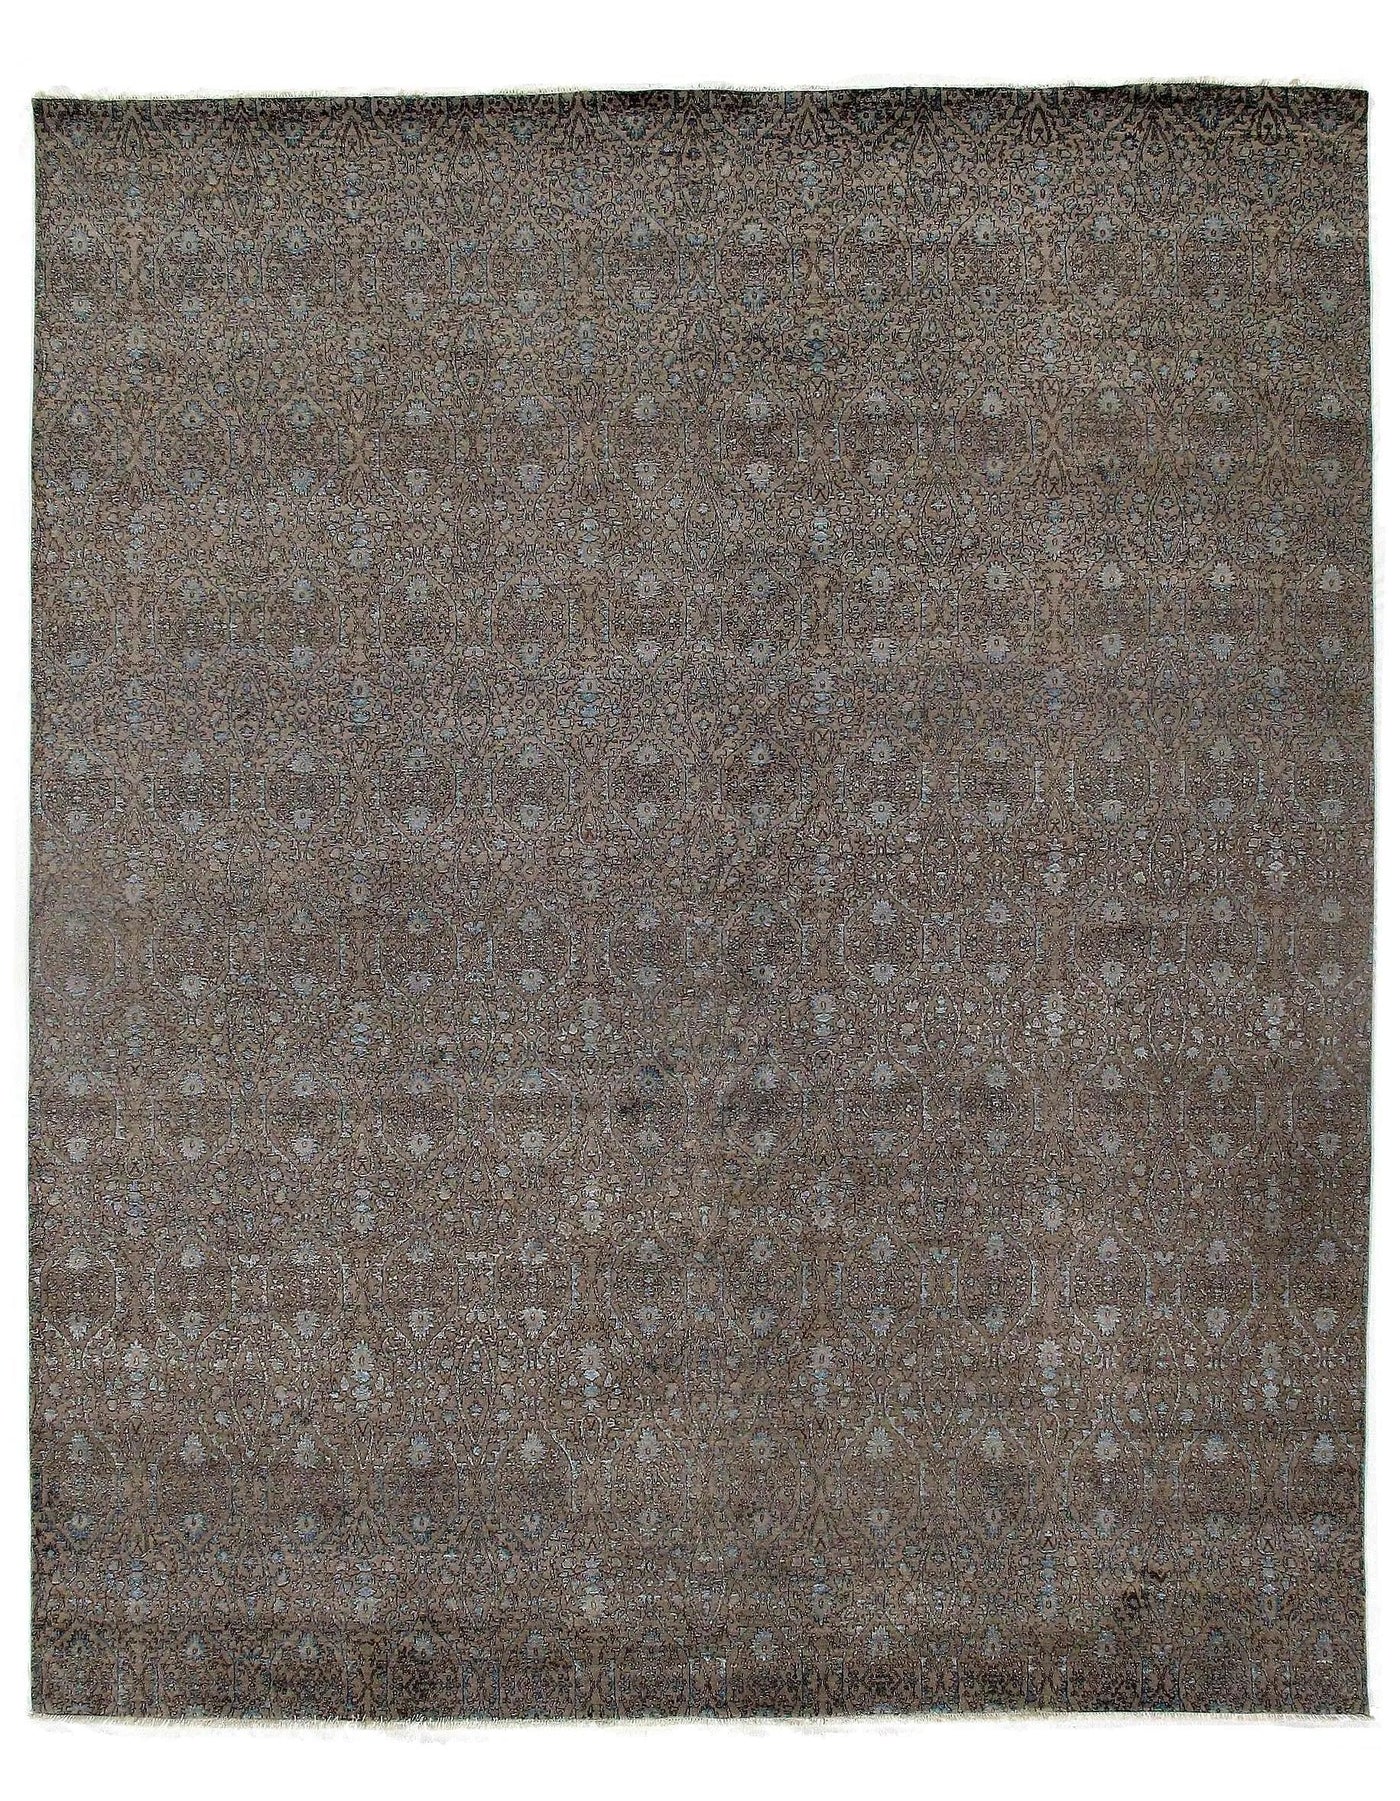 Gray Savannah Grass wool & silk Rug - 12' x 15'